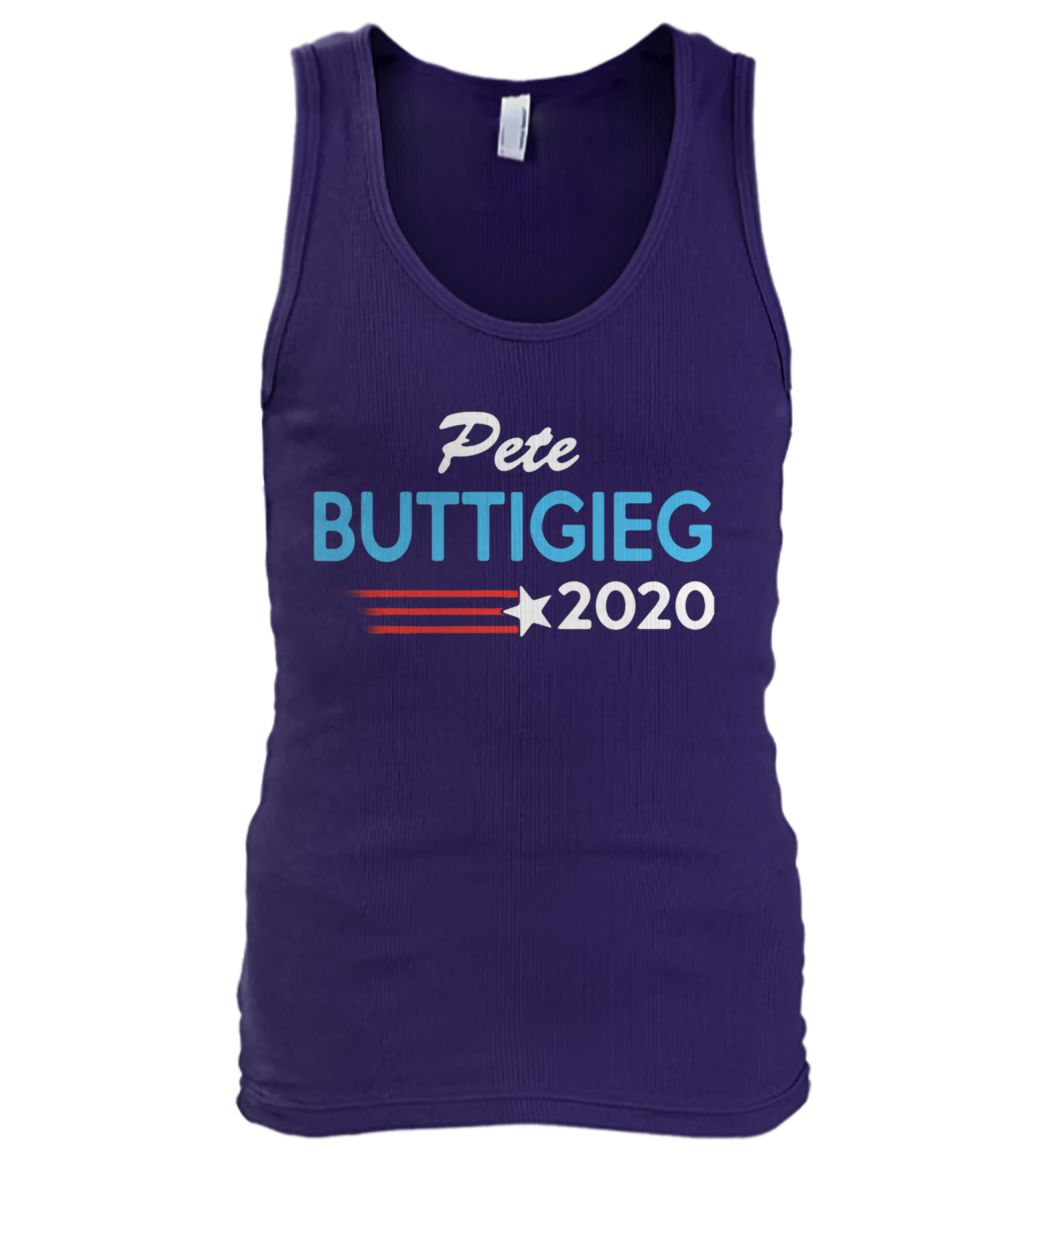 Pete buttigieg for president 2020 men's tank top